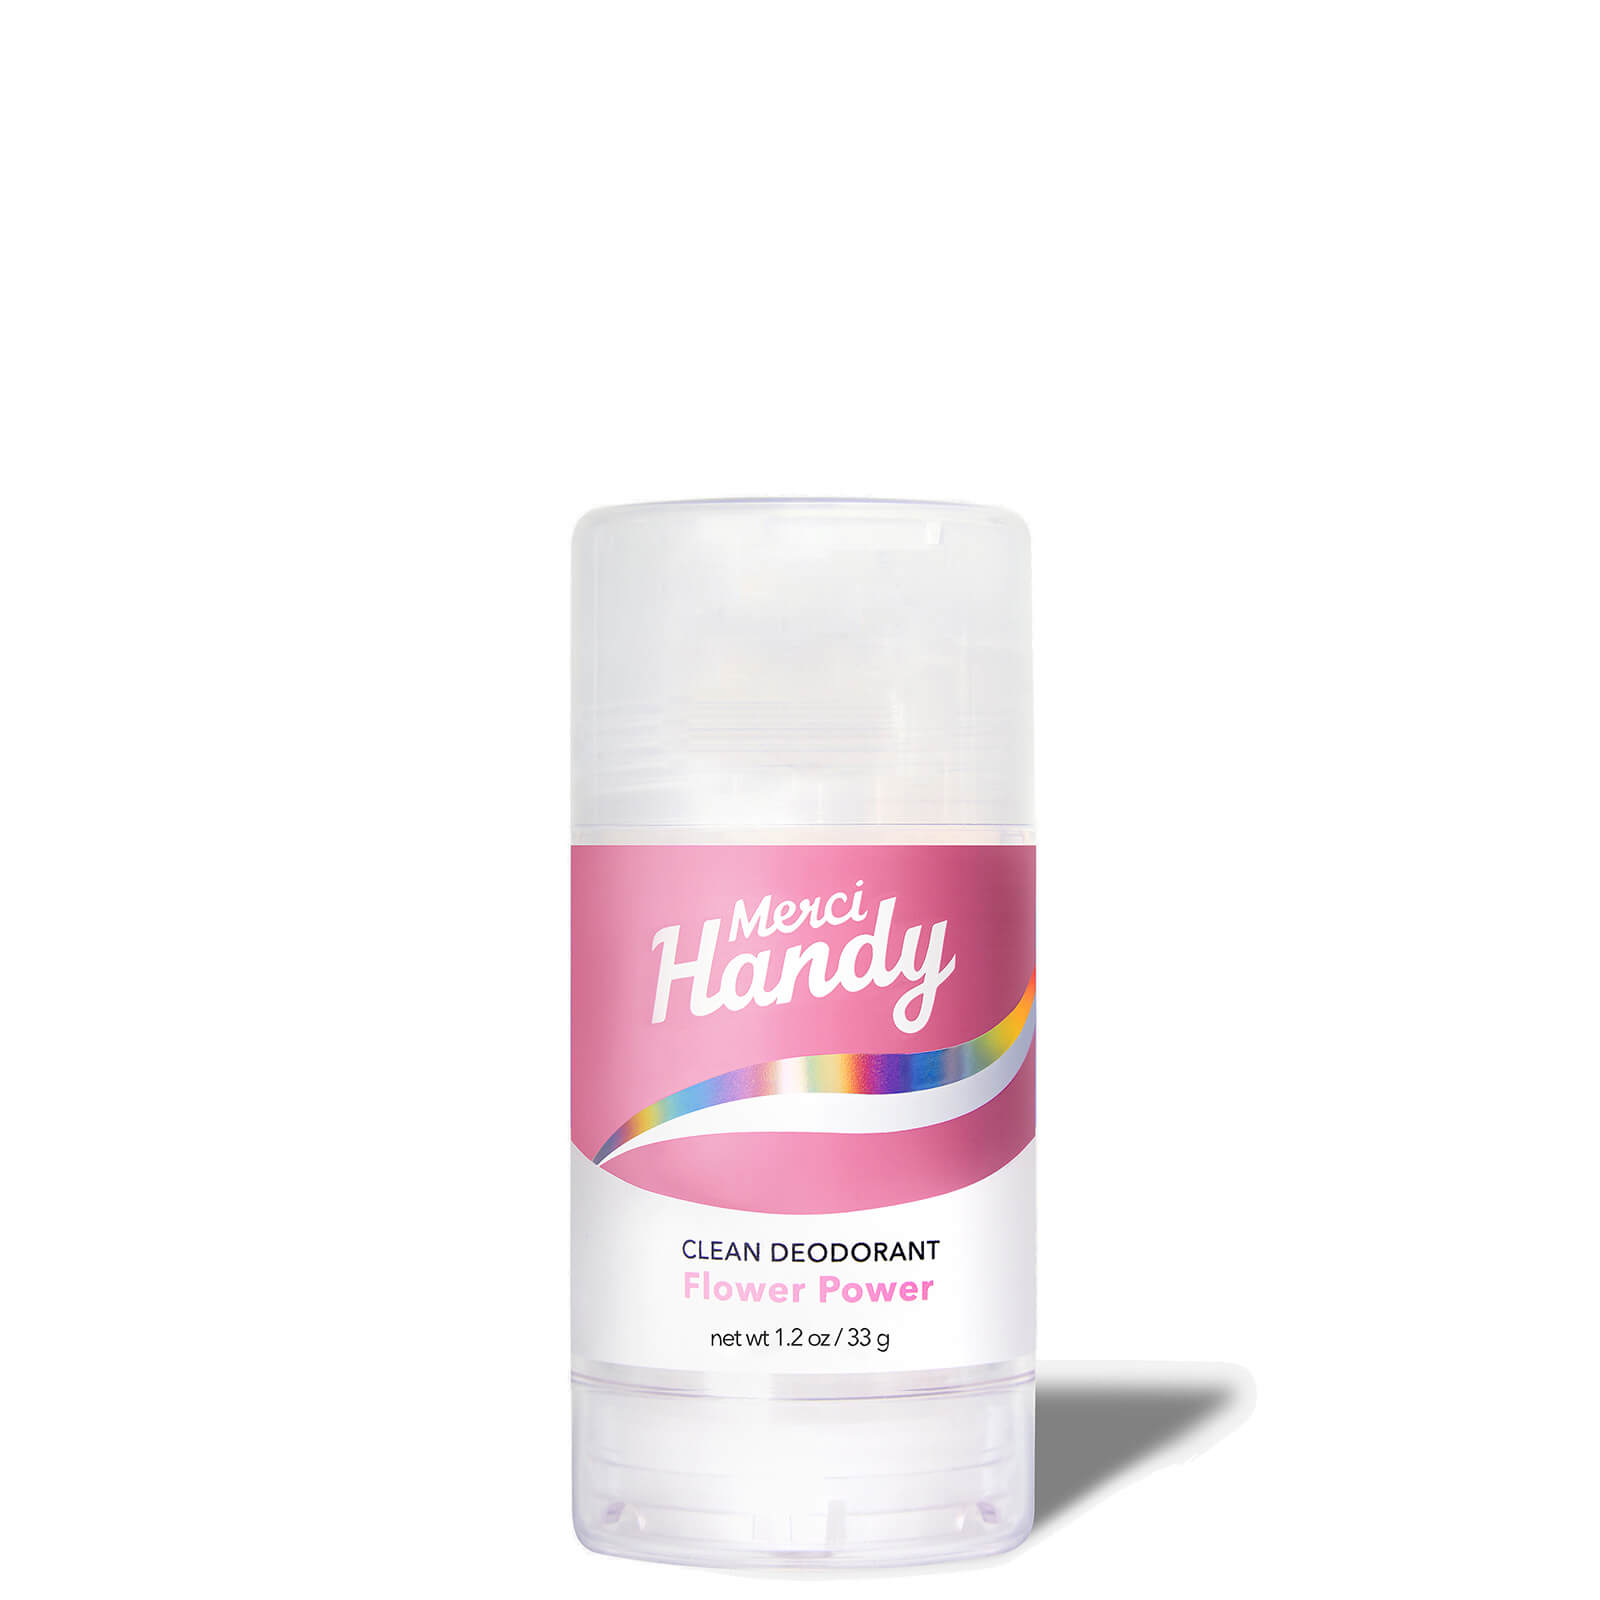 Merci Handy Clean Deodorant 33g (Various Fragrance) - Flower Power von Merci Handy